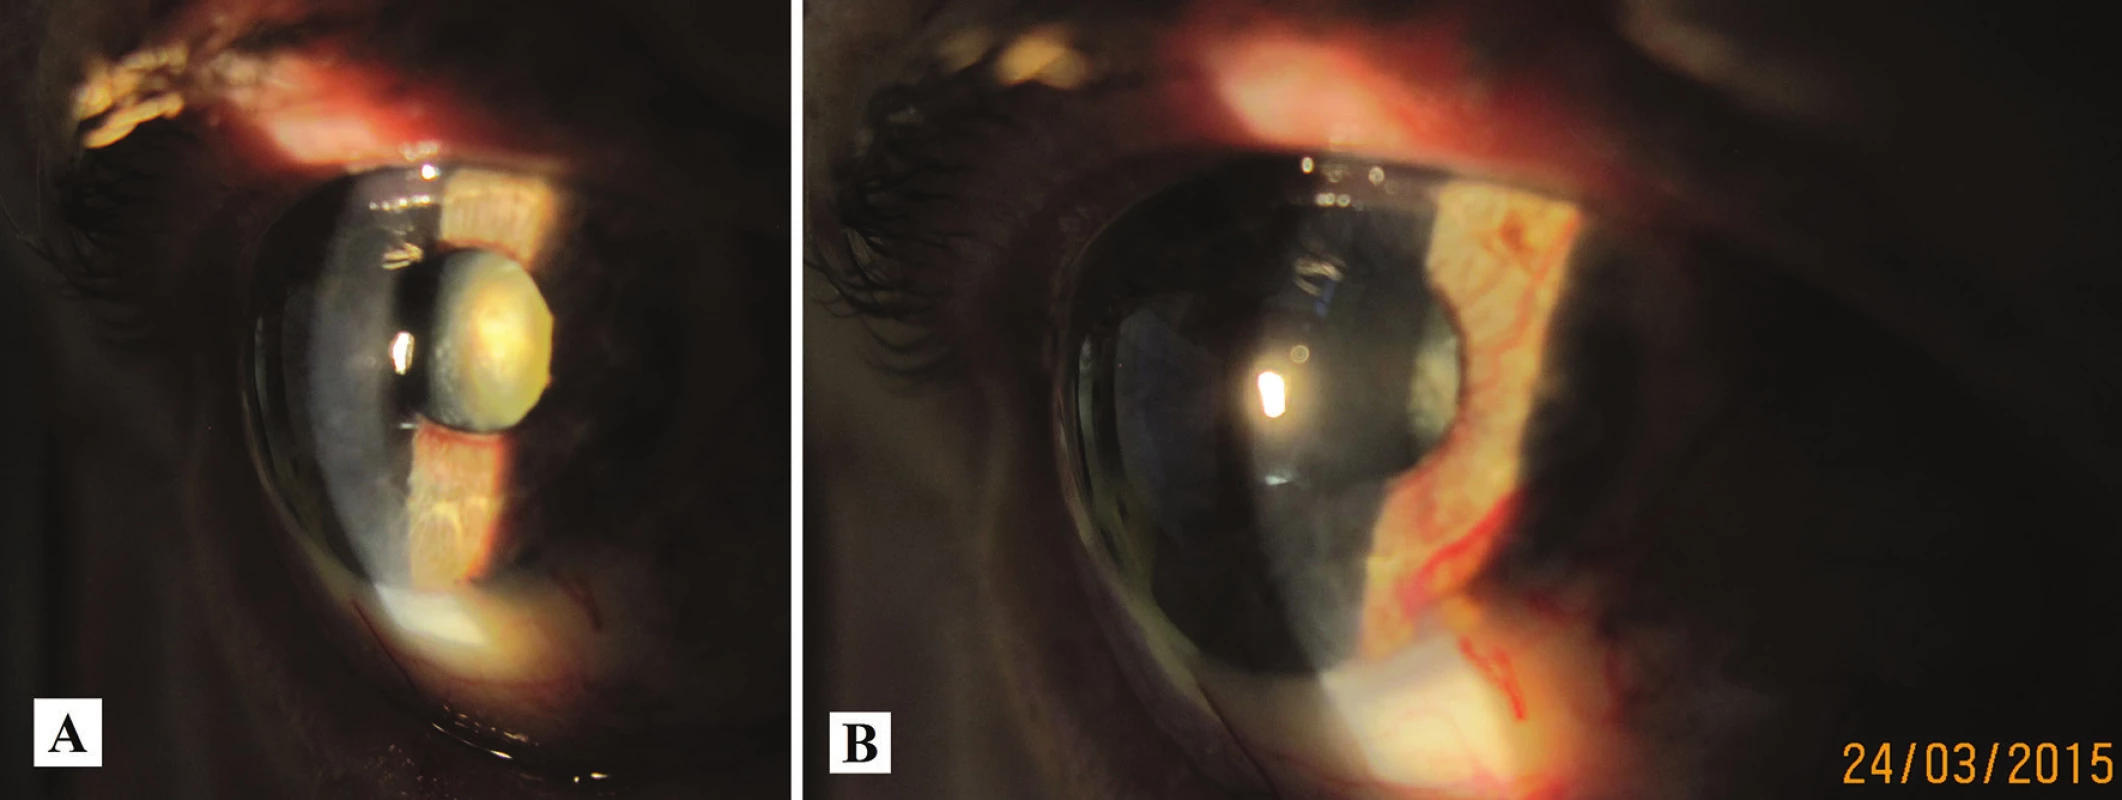 Makrofoto predného segmentu oka toho istého pacienta v r. 2015 – progresia katarakty (A), zvýraznenie neovaskularizácie dúhovky (B)